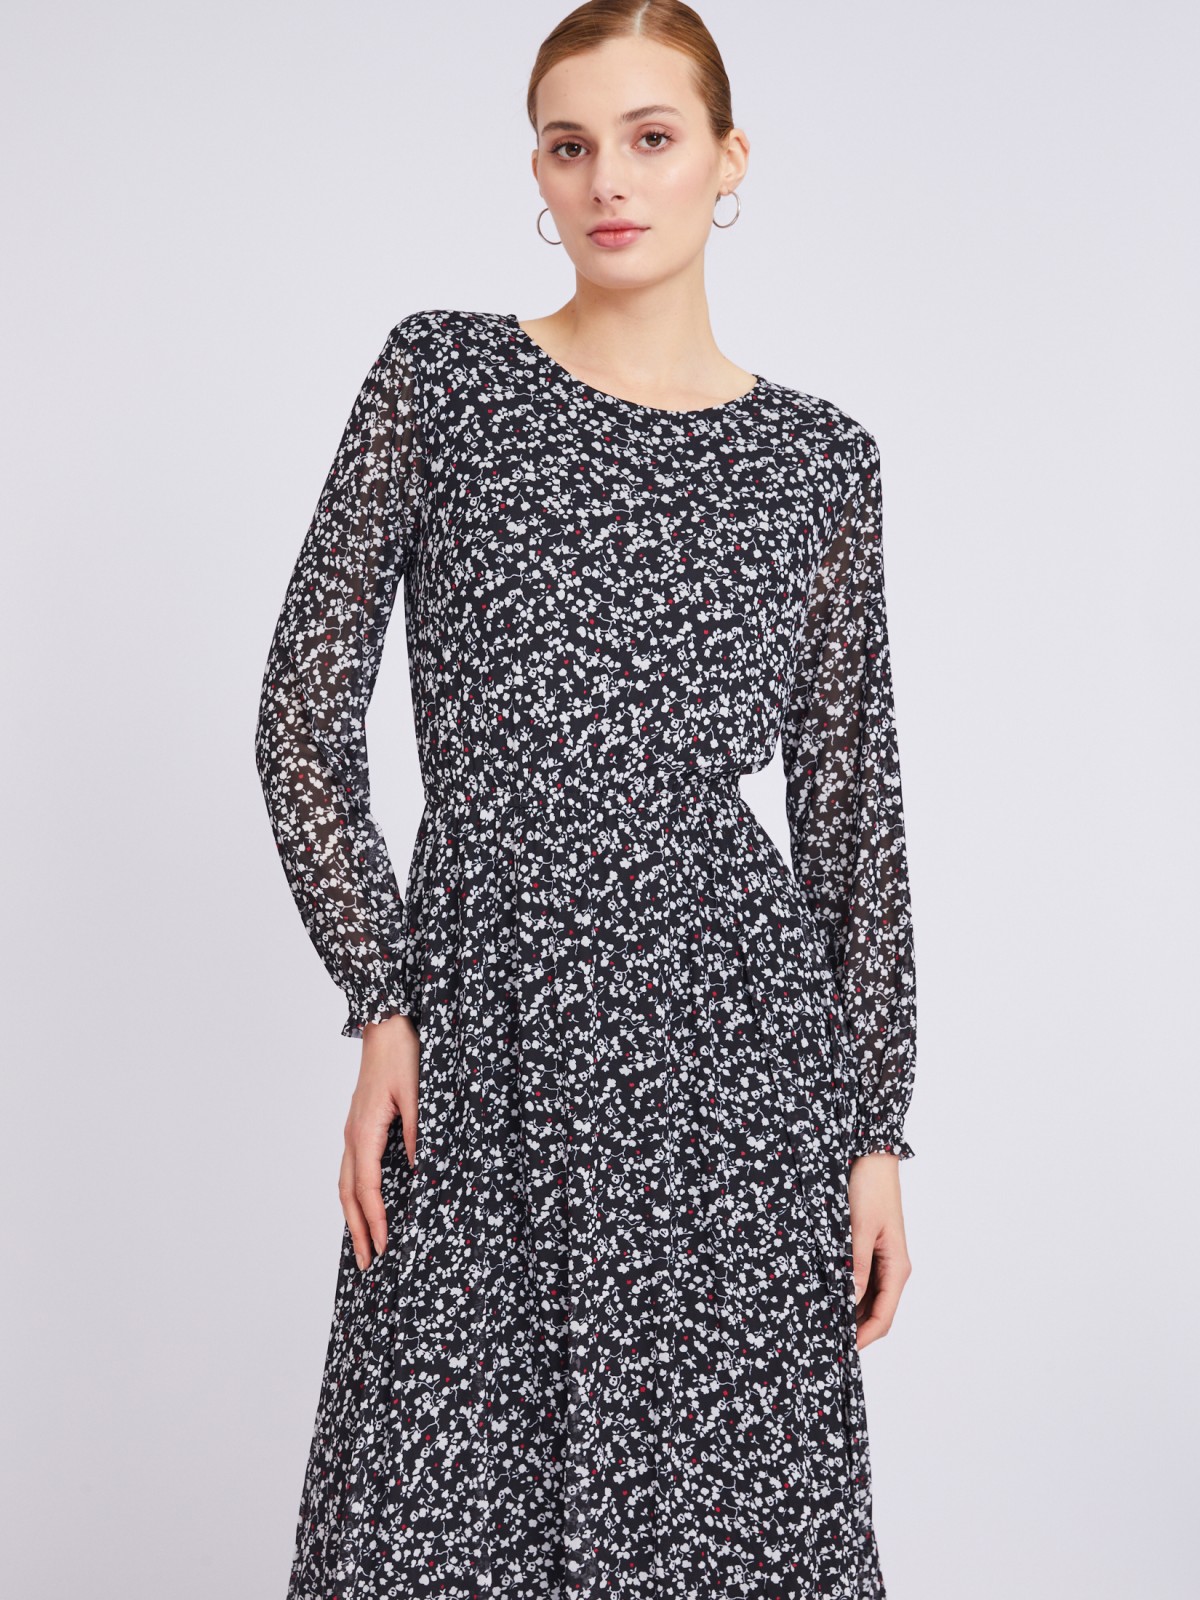 Принтованное платье длины миди из сетки zolla 023318159012, цвет черный, размер M - фото 3